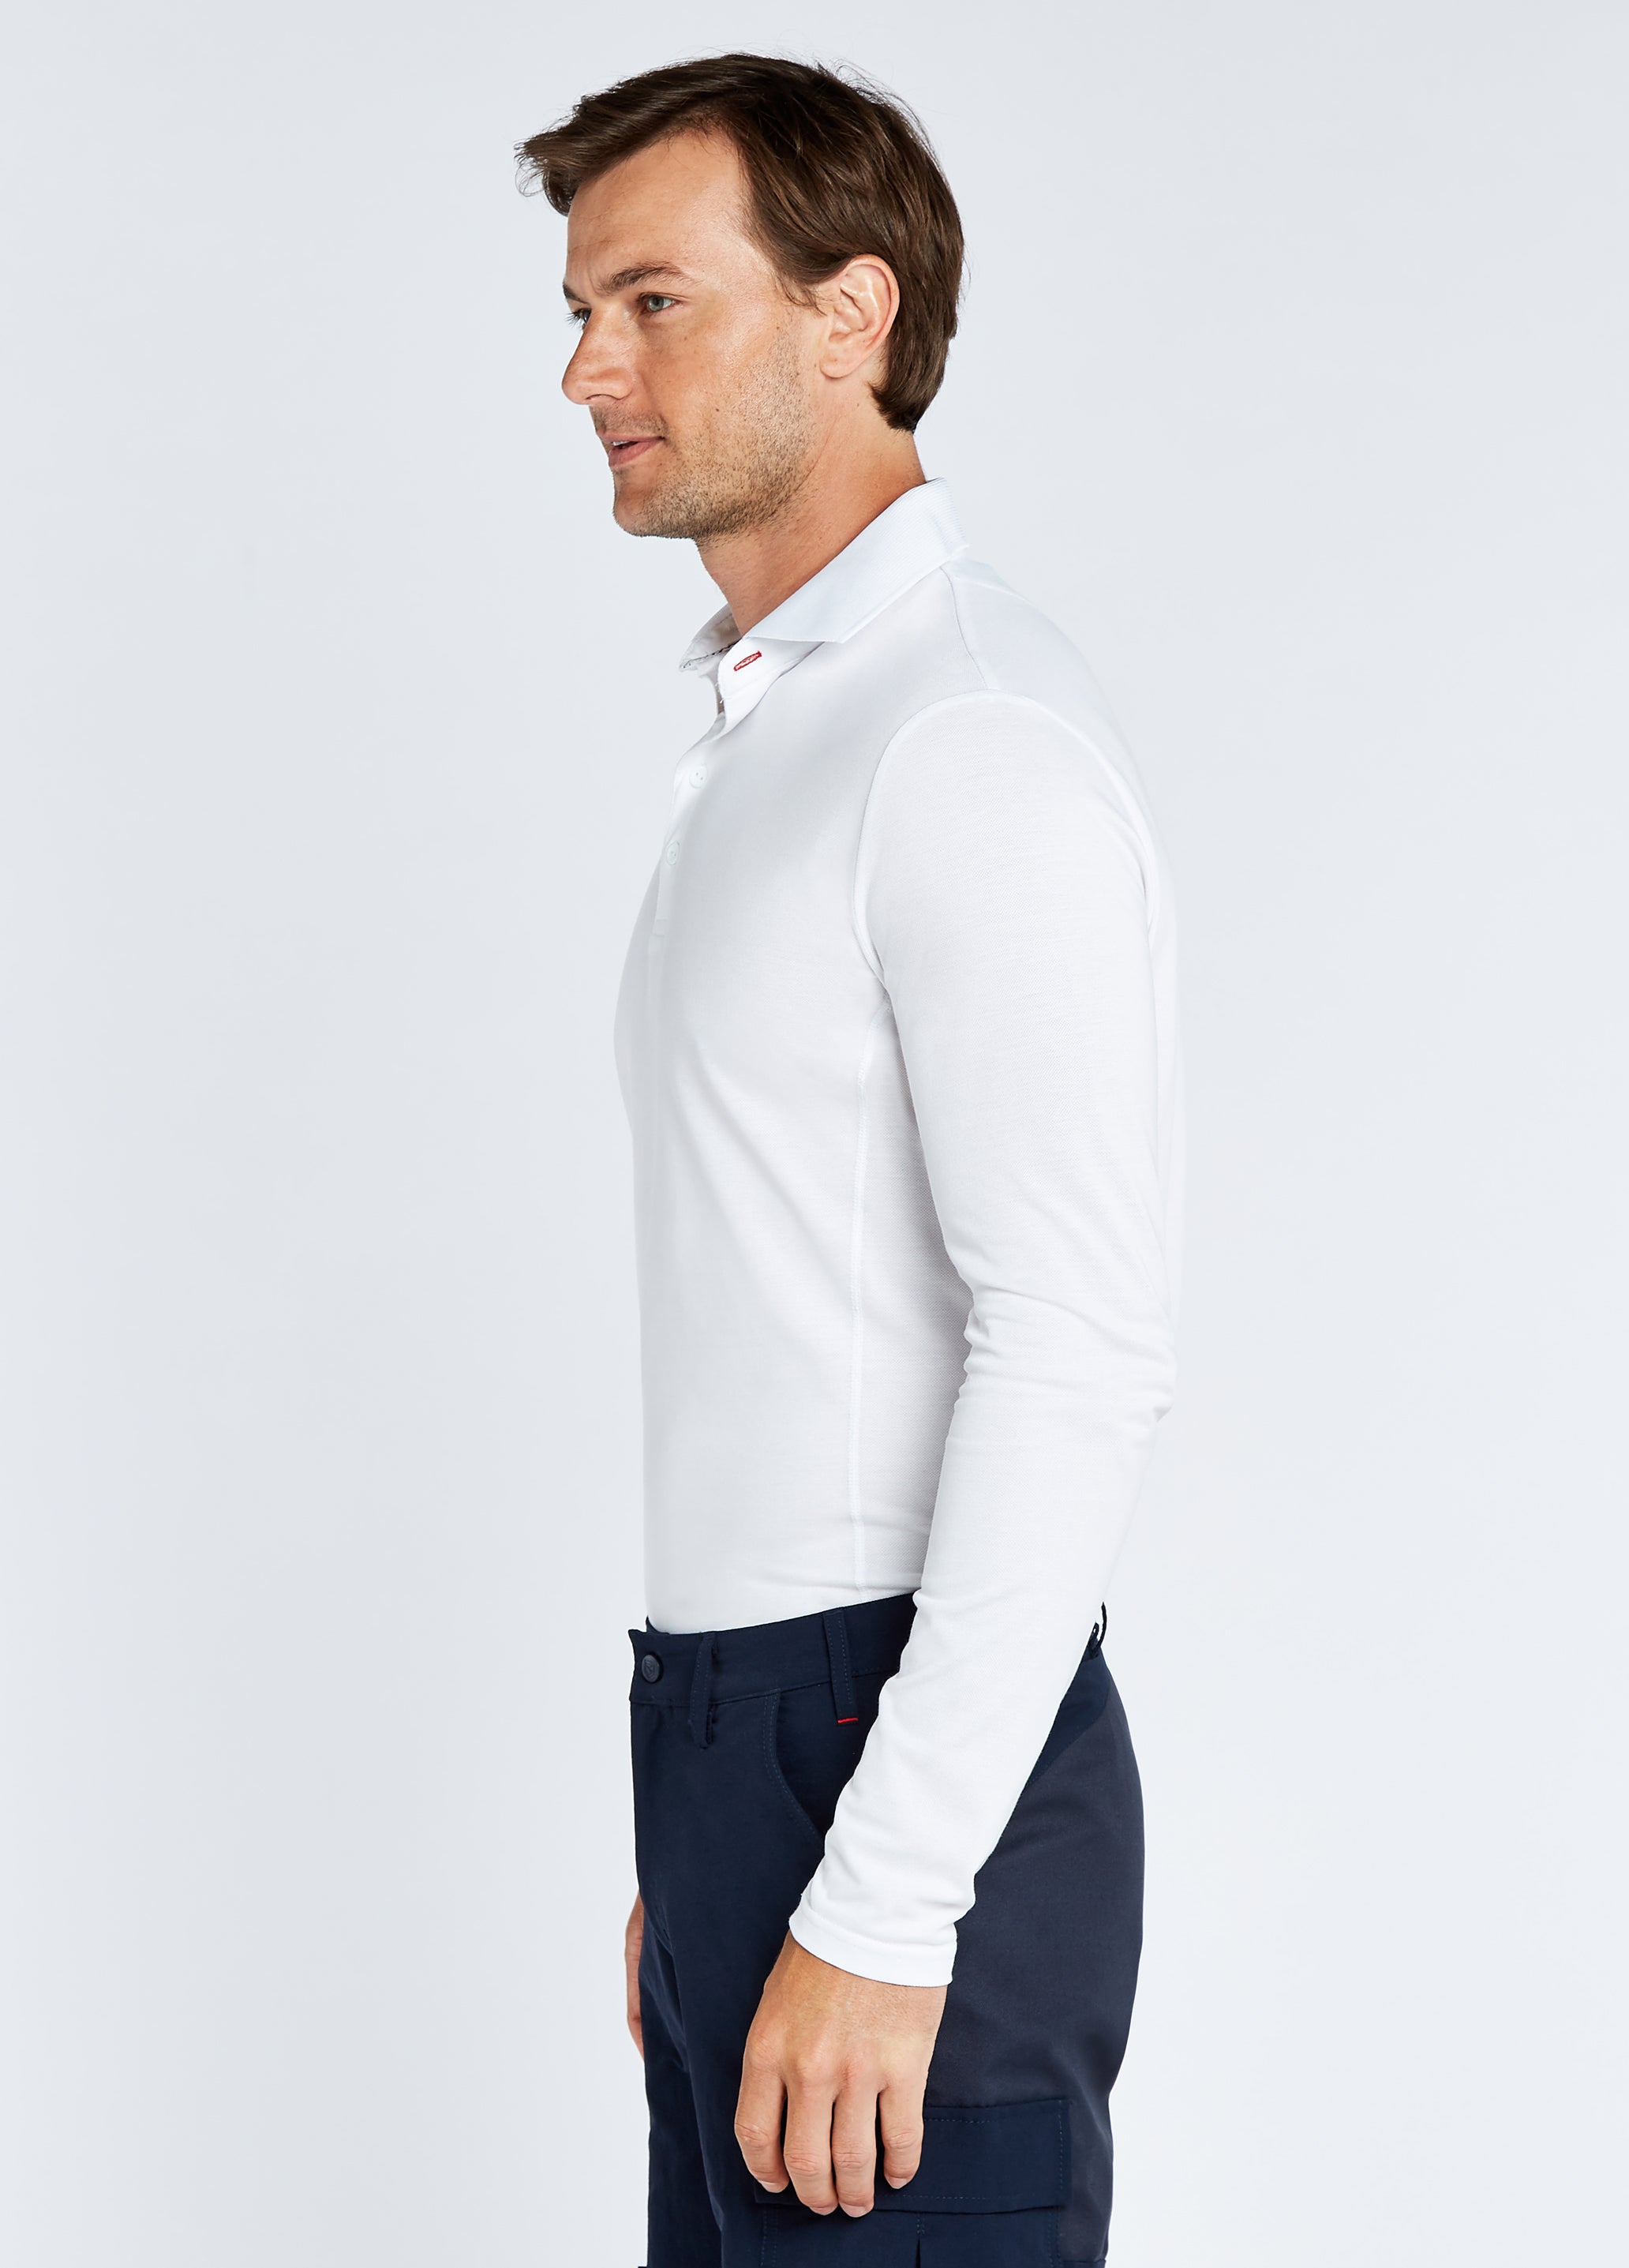 Freshford Unisex Long-sleeved Polo - White